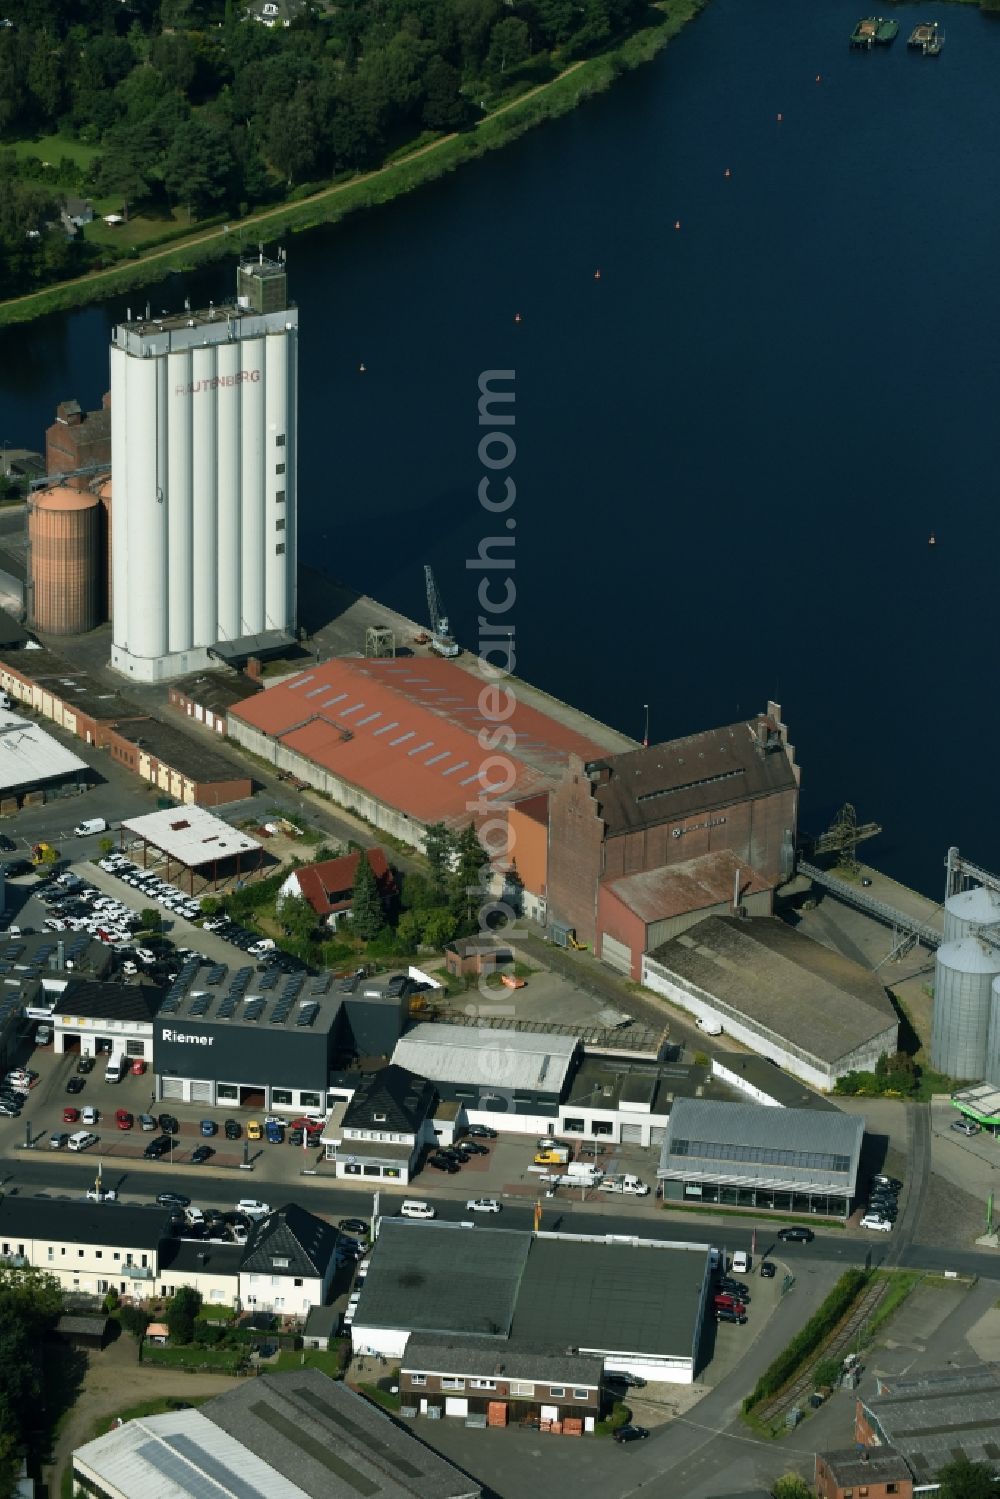 Aerial image Mölln - High silo and grain storage with adjacent storage Grundstuecksgesellschaft Hermann Rautenberg mbH on the Hafenstrasse in Moelln in the state Schleswig-Holstein